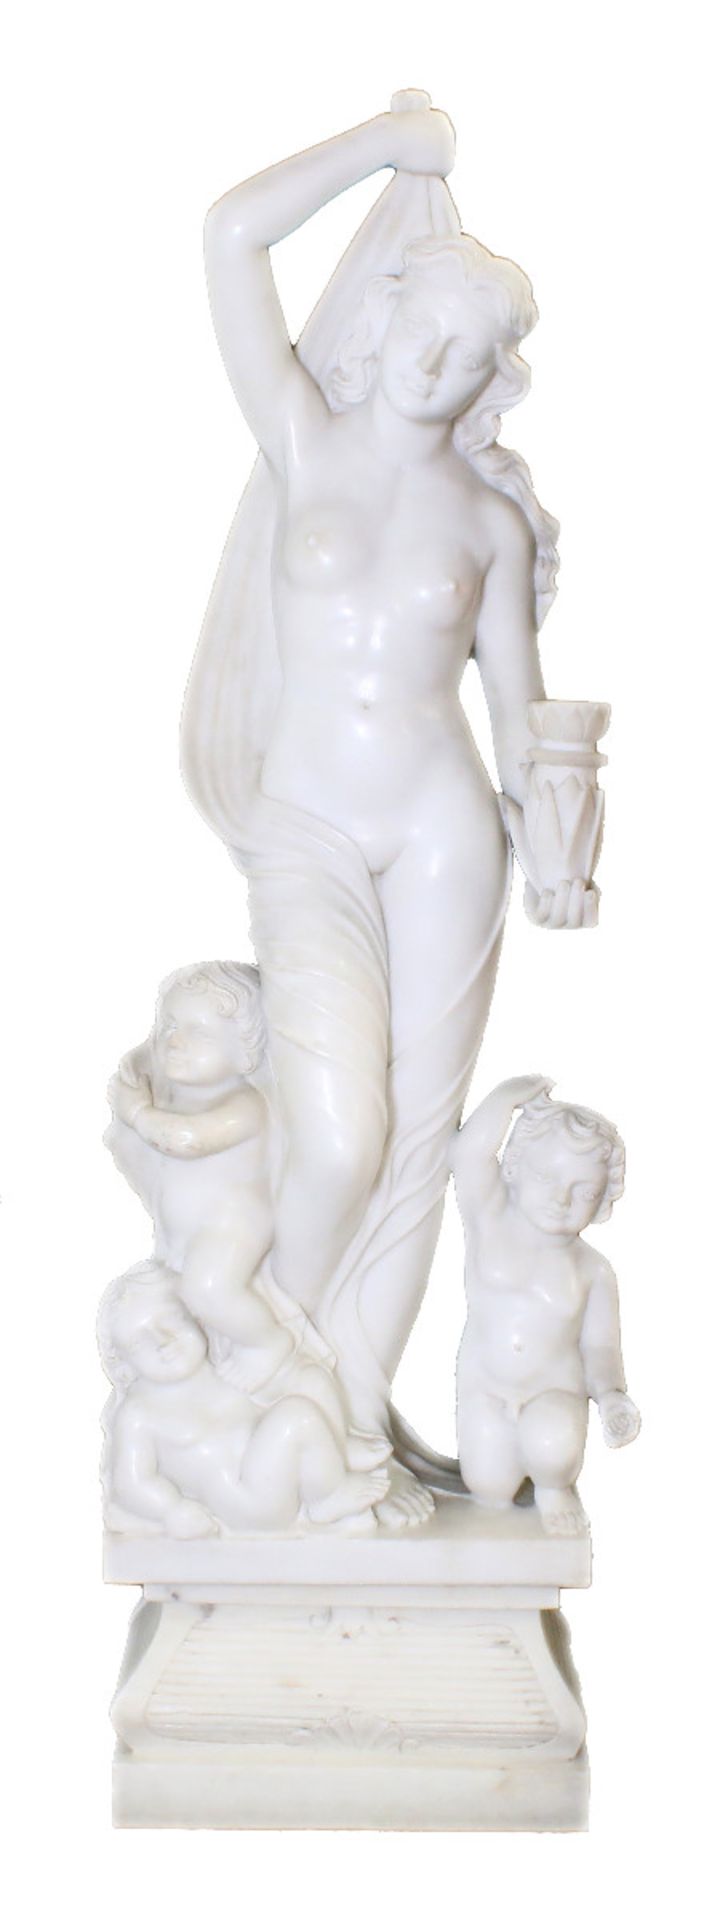 Große Marmorfigur - "Allegorie des Sommers"Weiblicher Halbakt aus weißem Carrara Marmor. In der